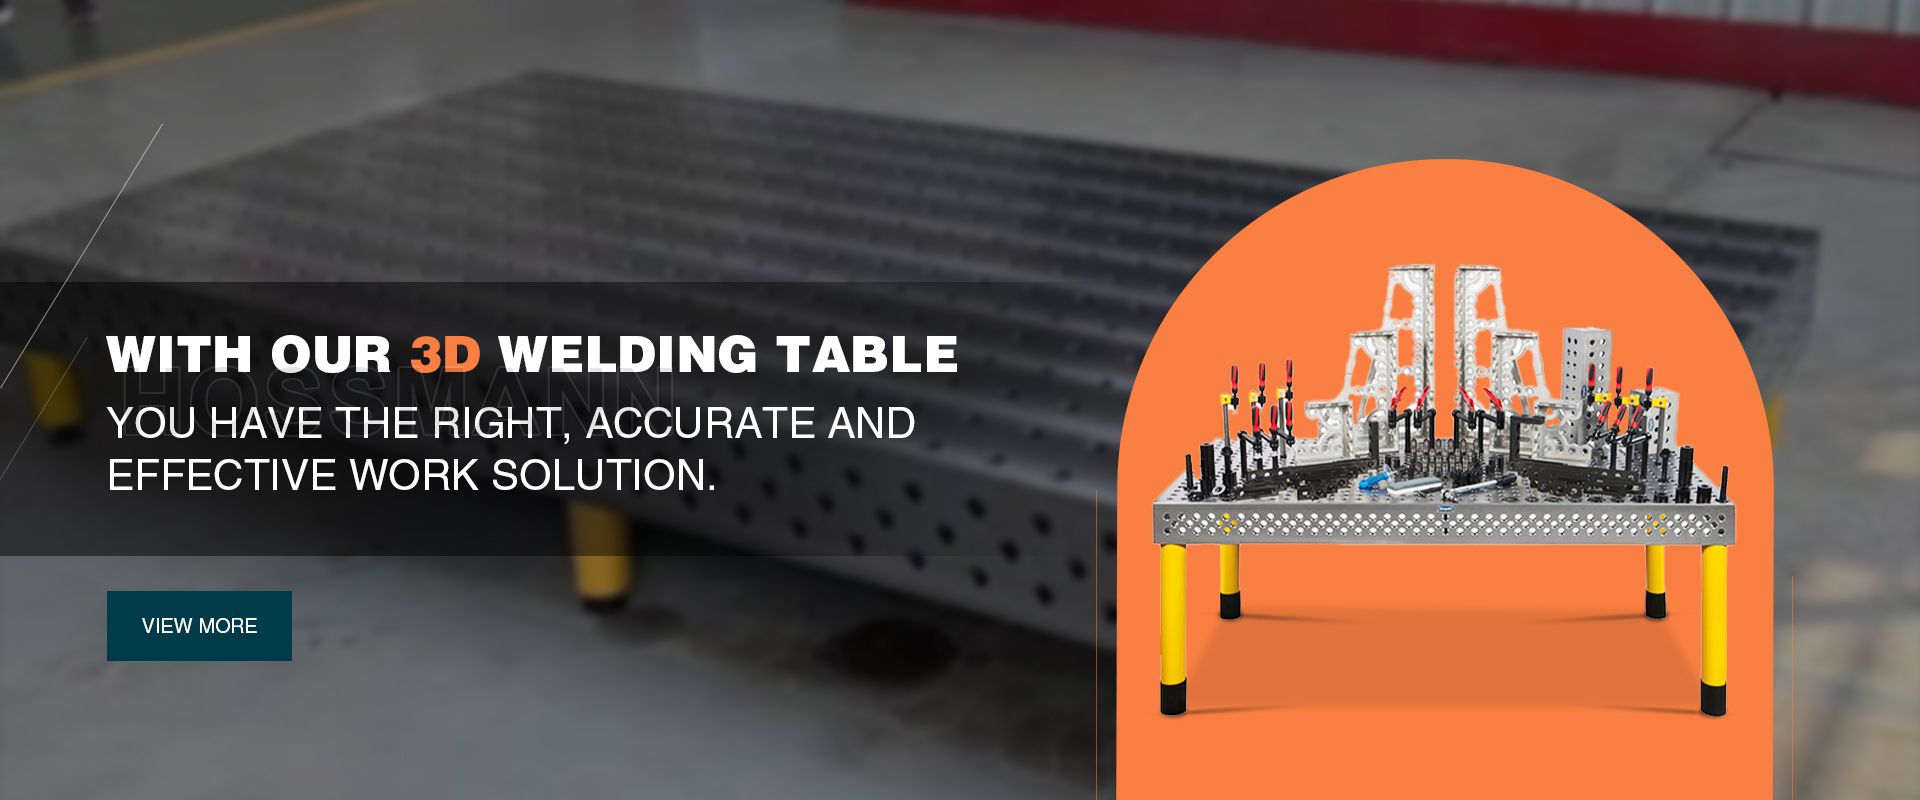 Buy 3D Welding Table